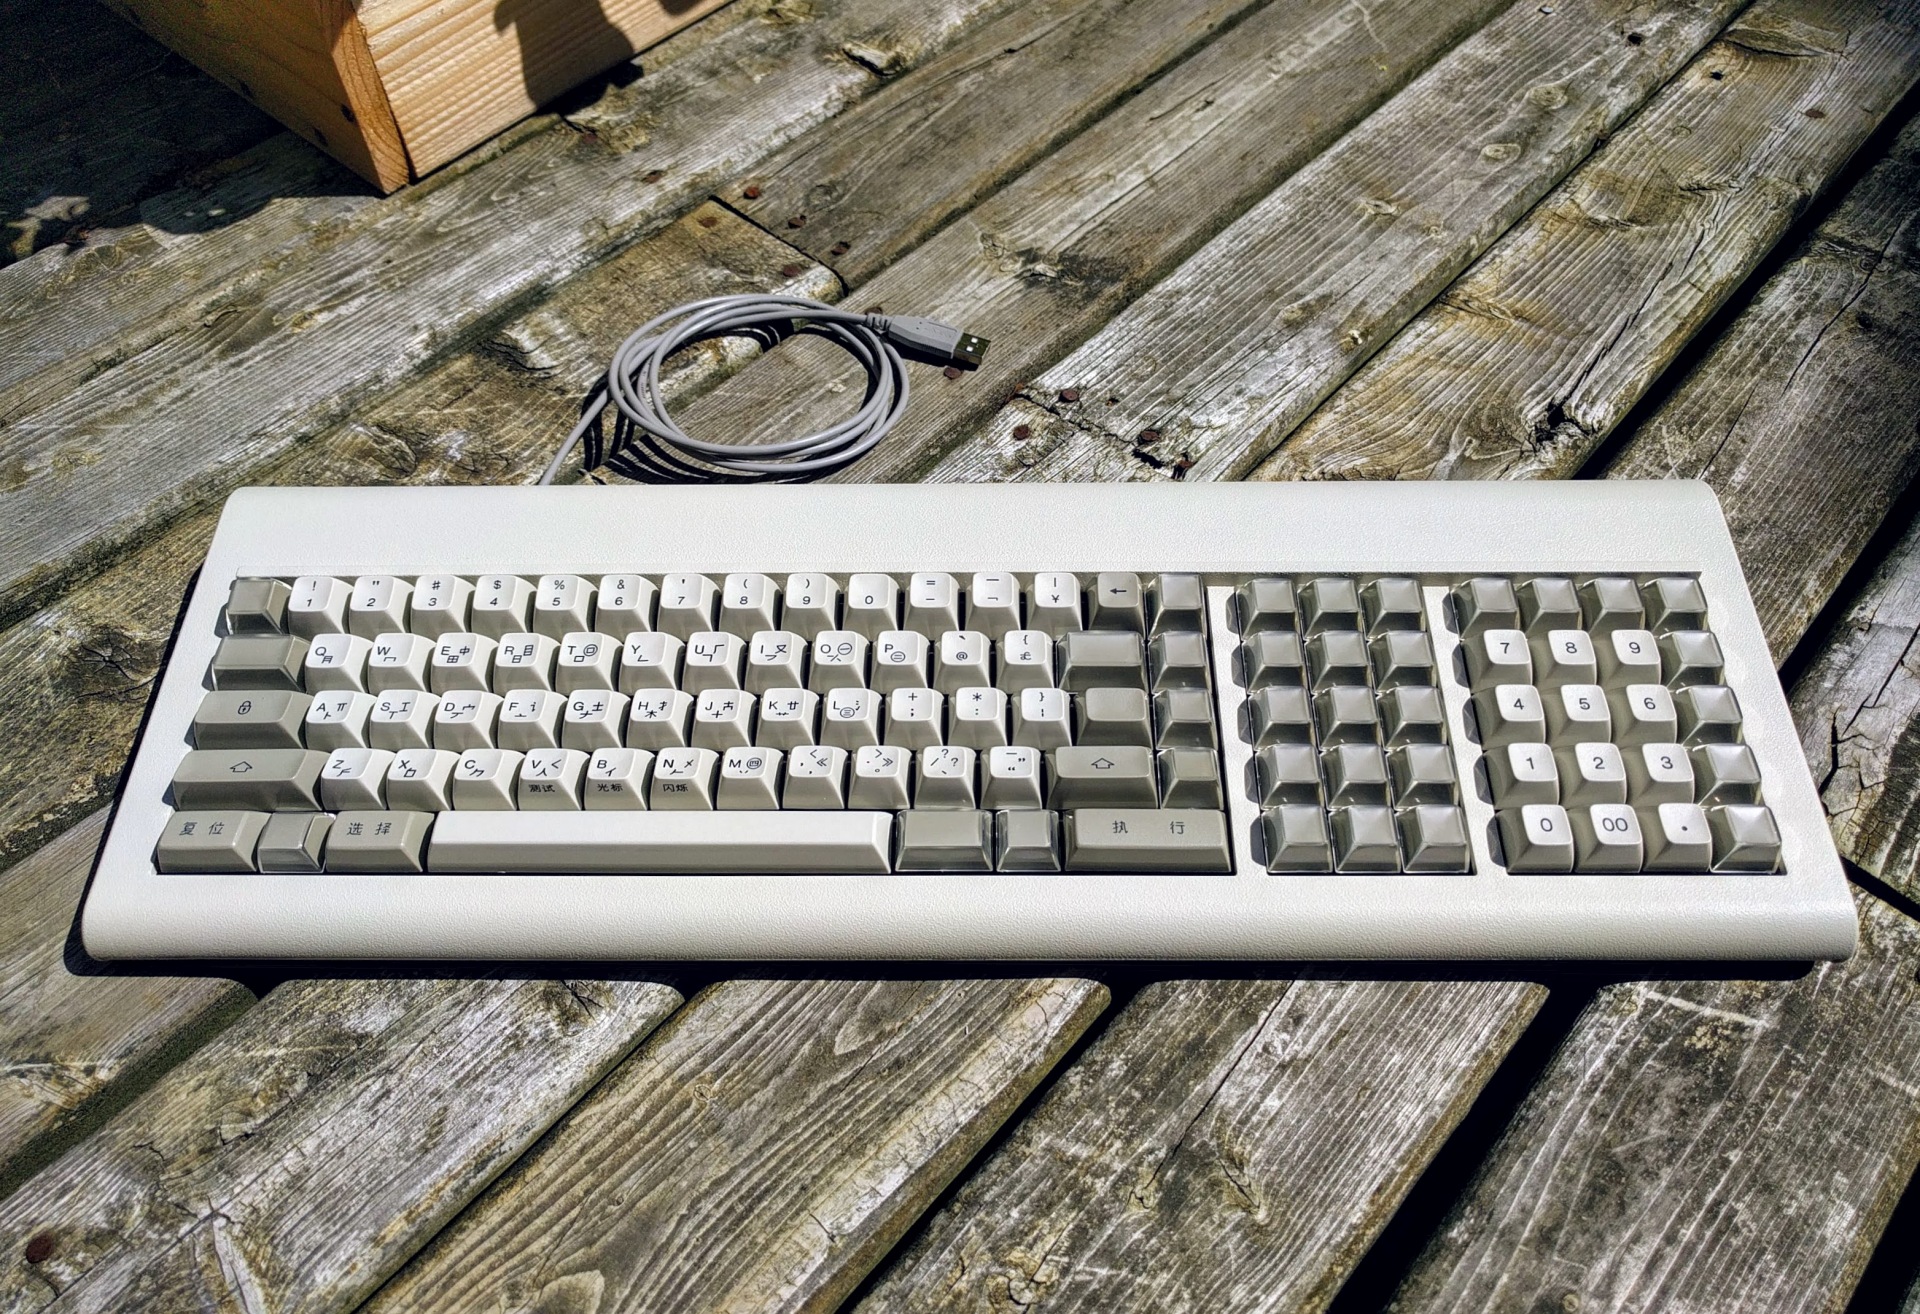 IBM 6113442 pingmaster keyboard